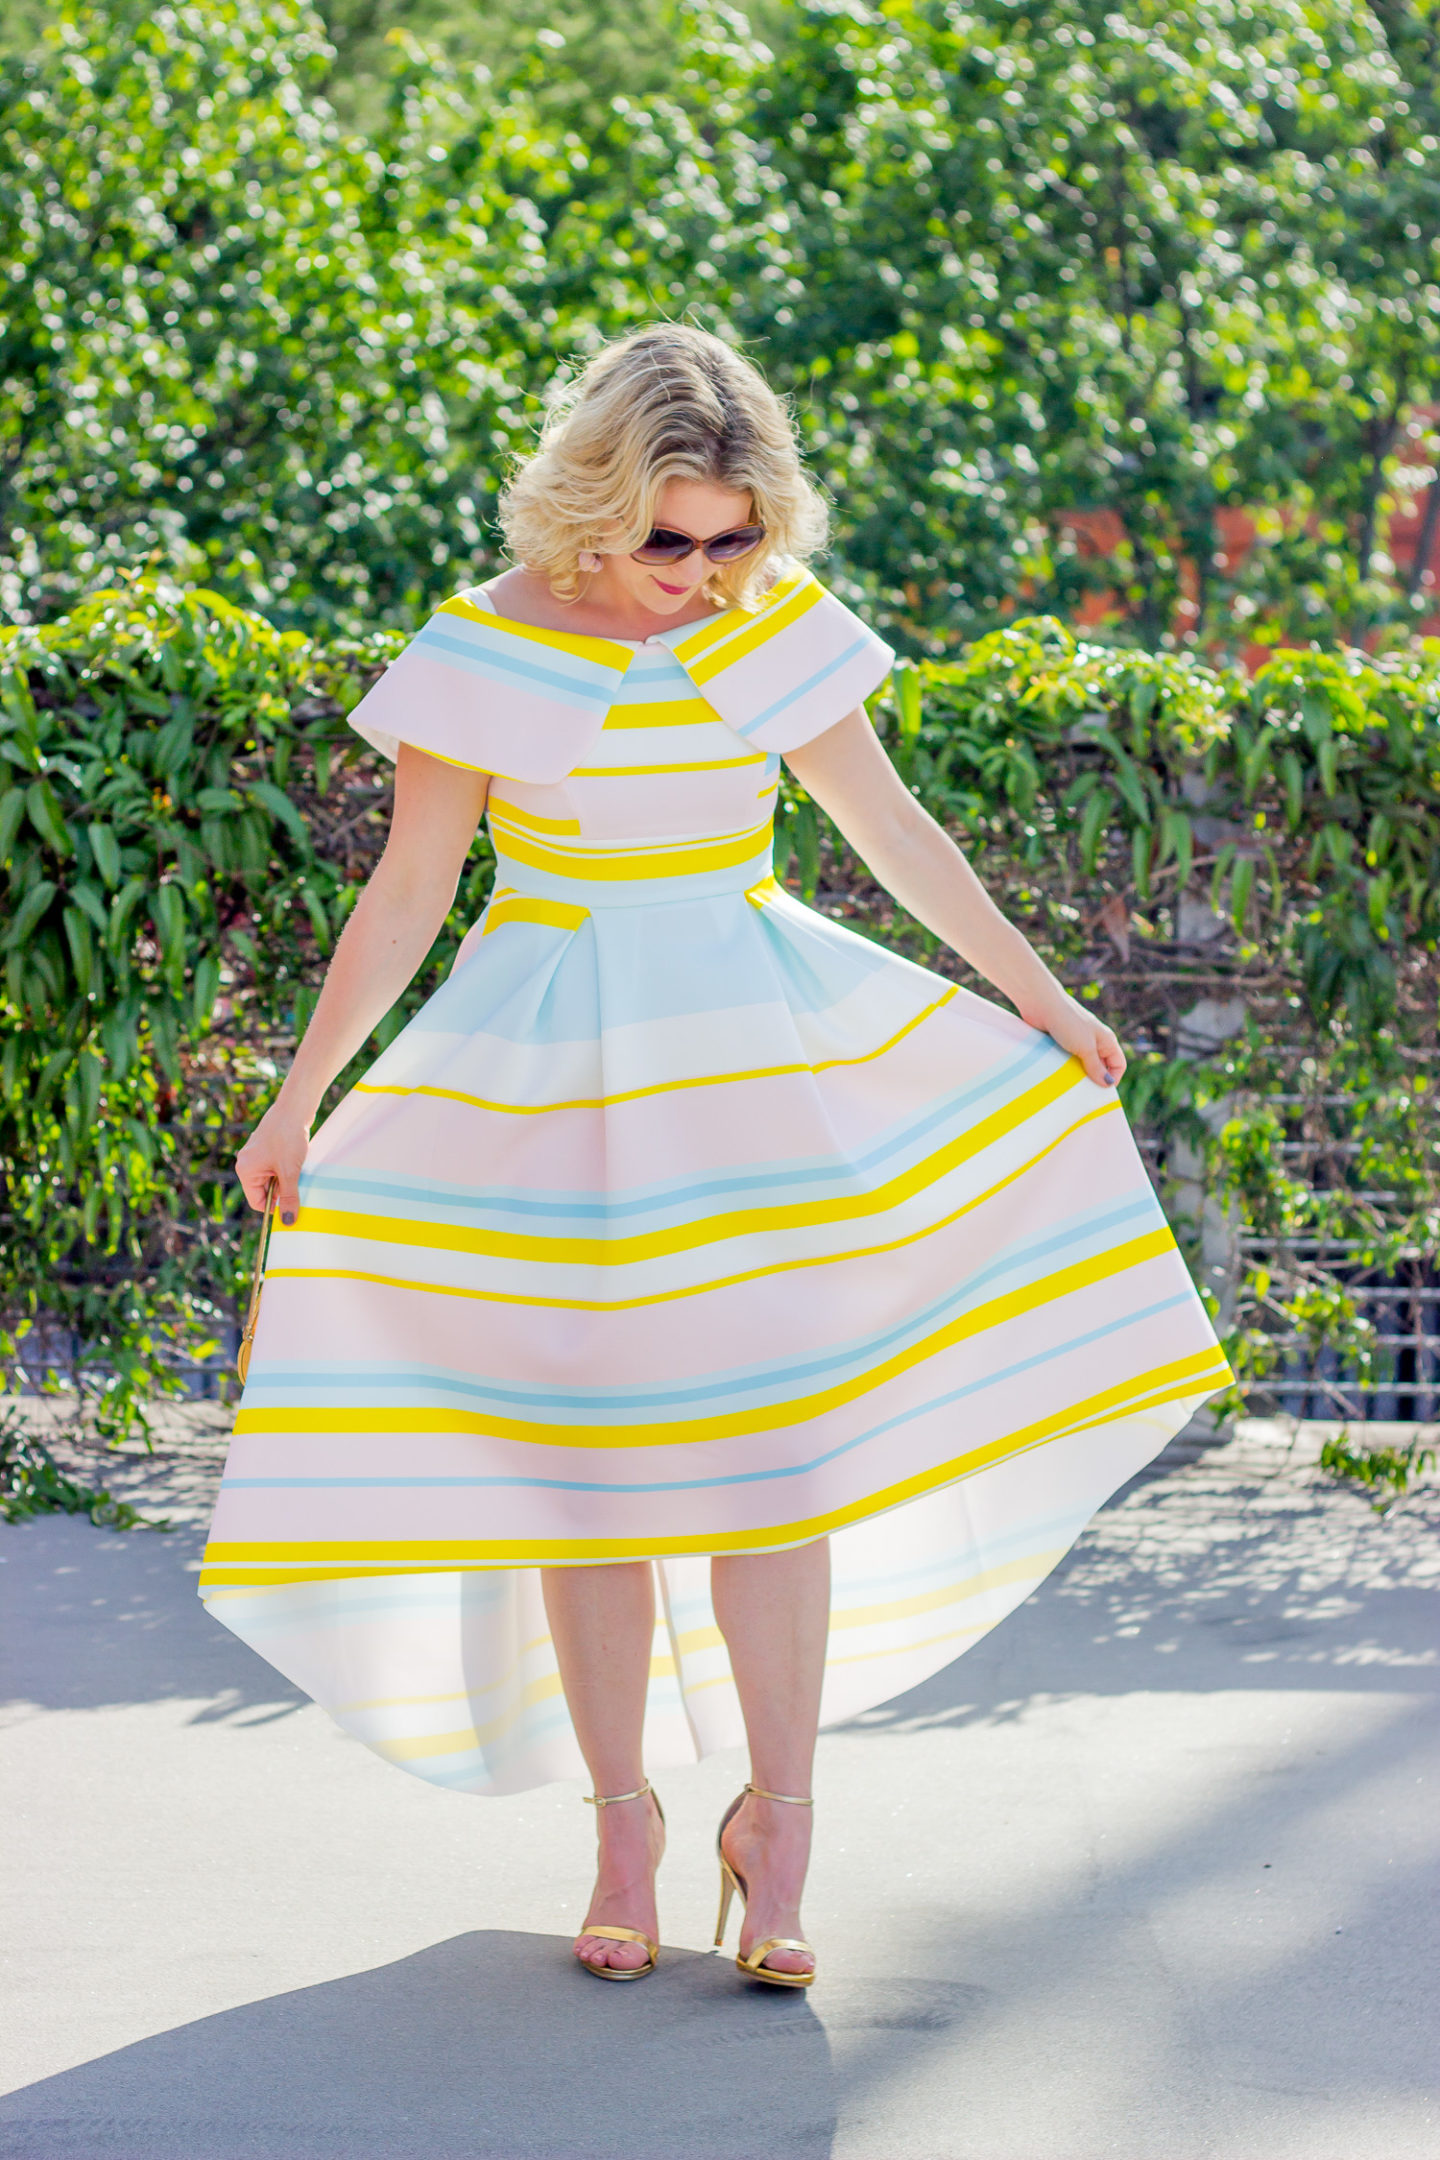 Asos striped dress worn by Atlanta blogger Elise Giannasi